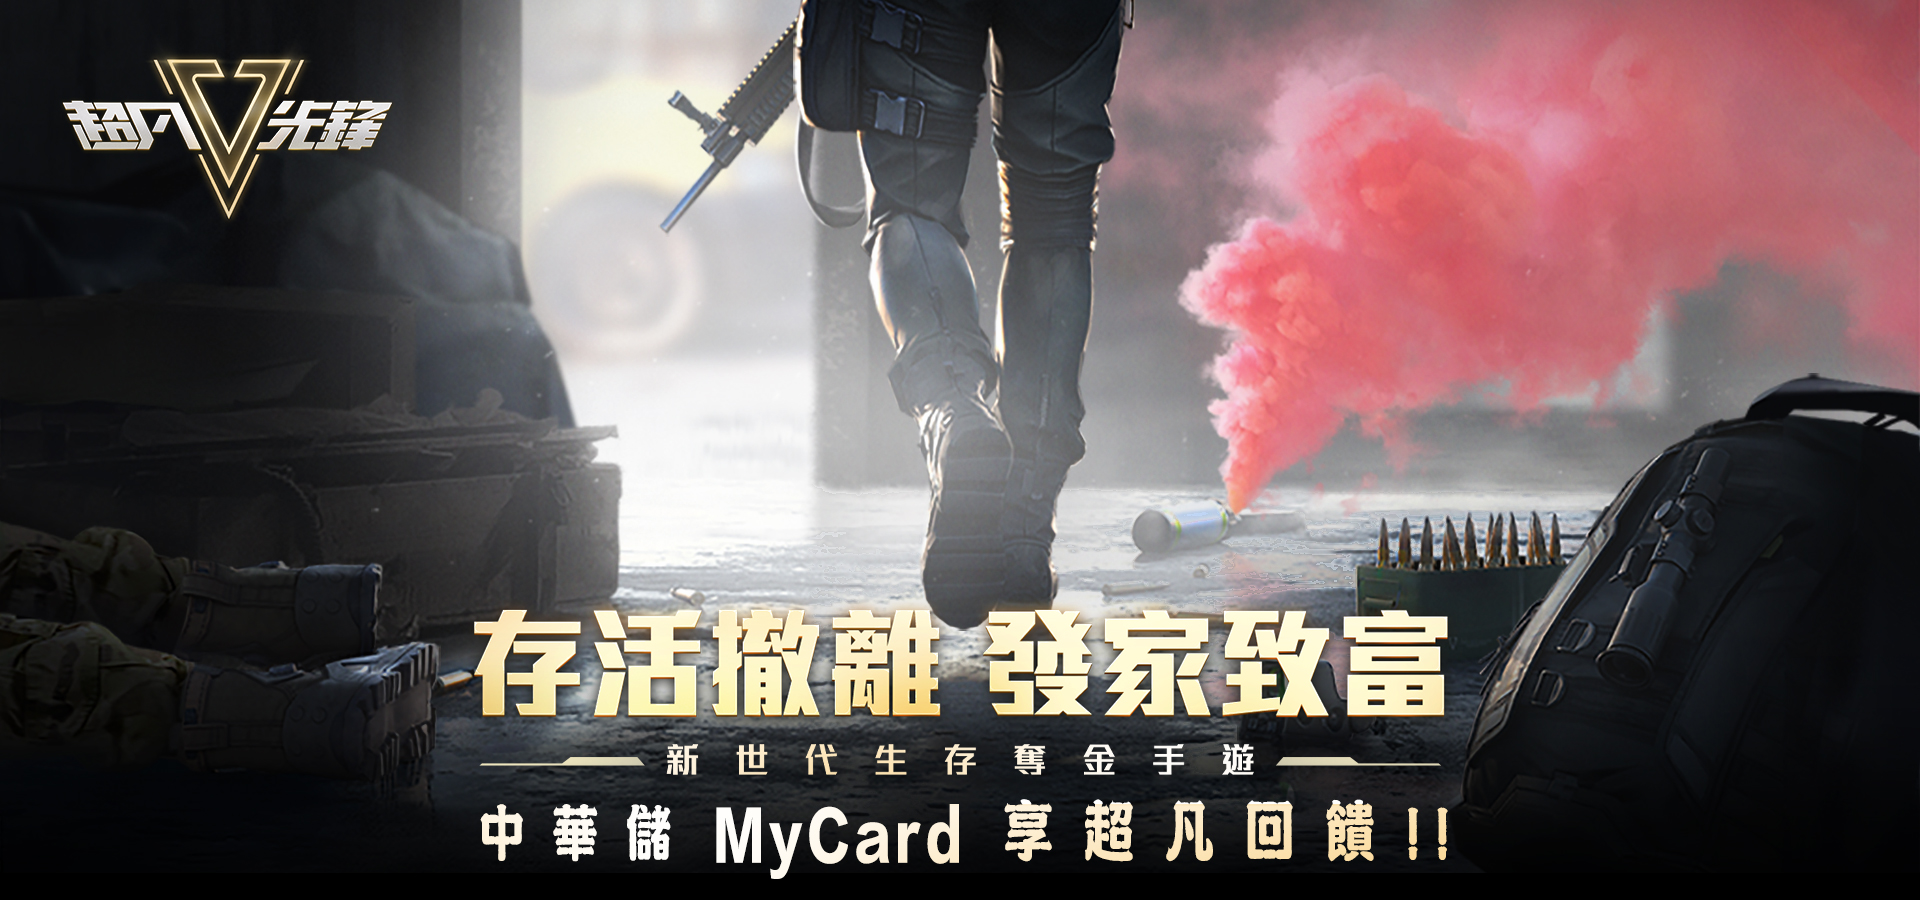   《超凡先鋒》MyCard儲值享超值好禮回饋 | 中華電信